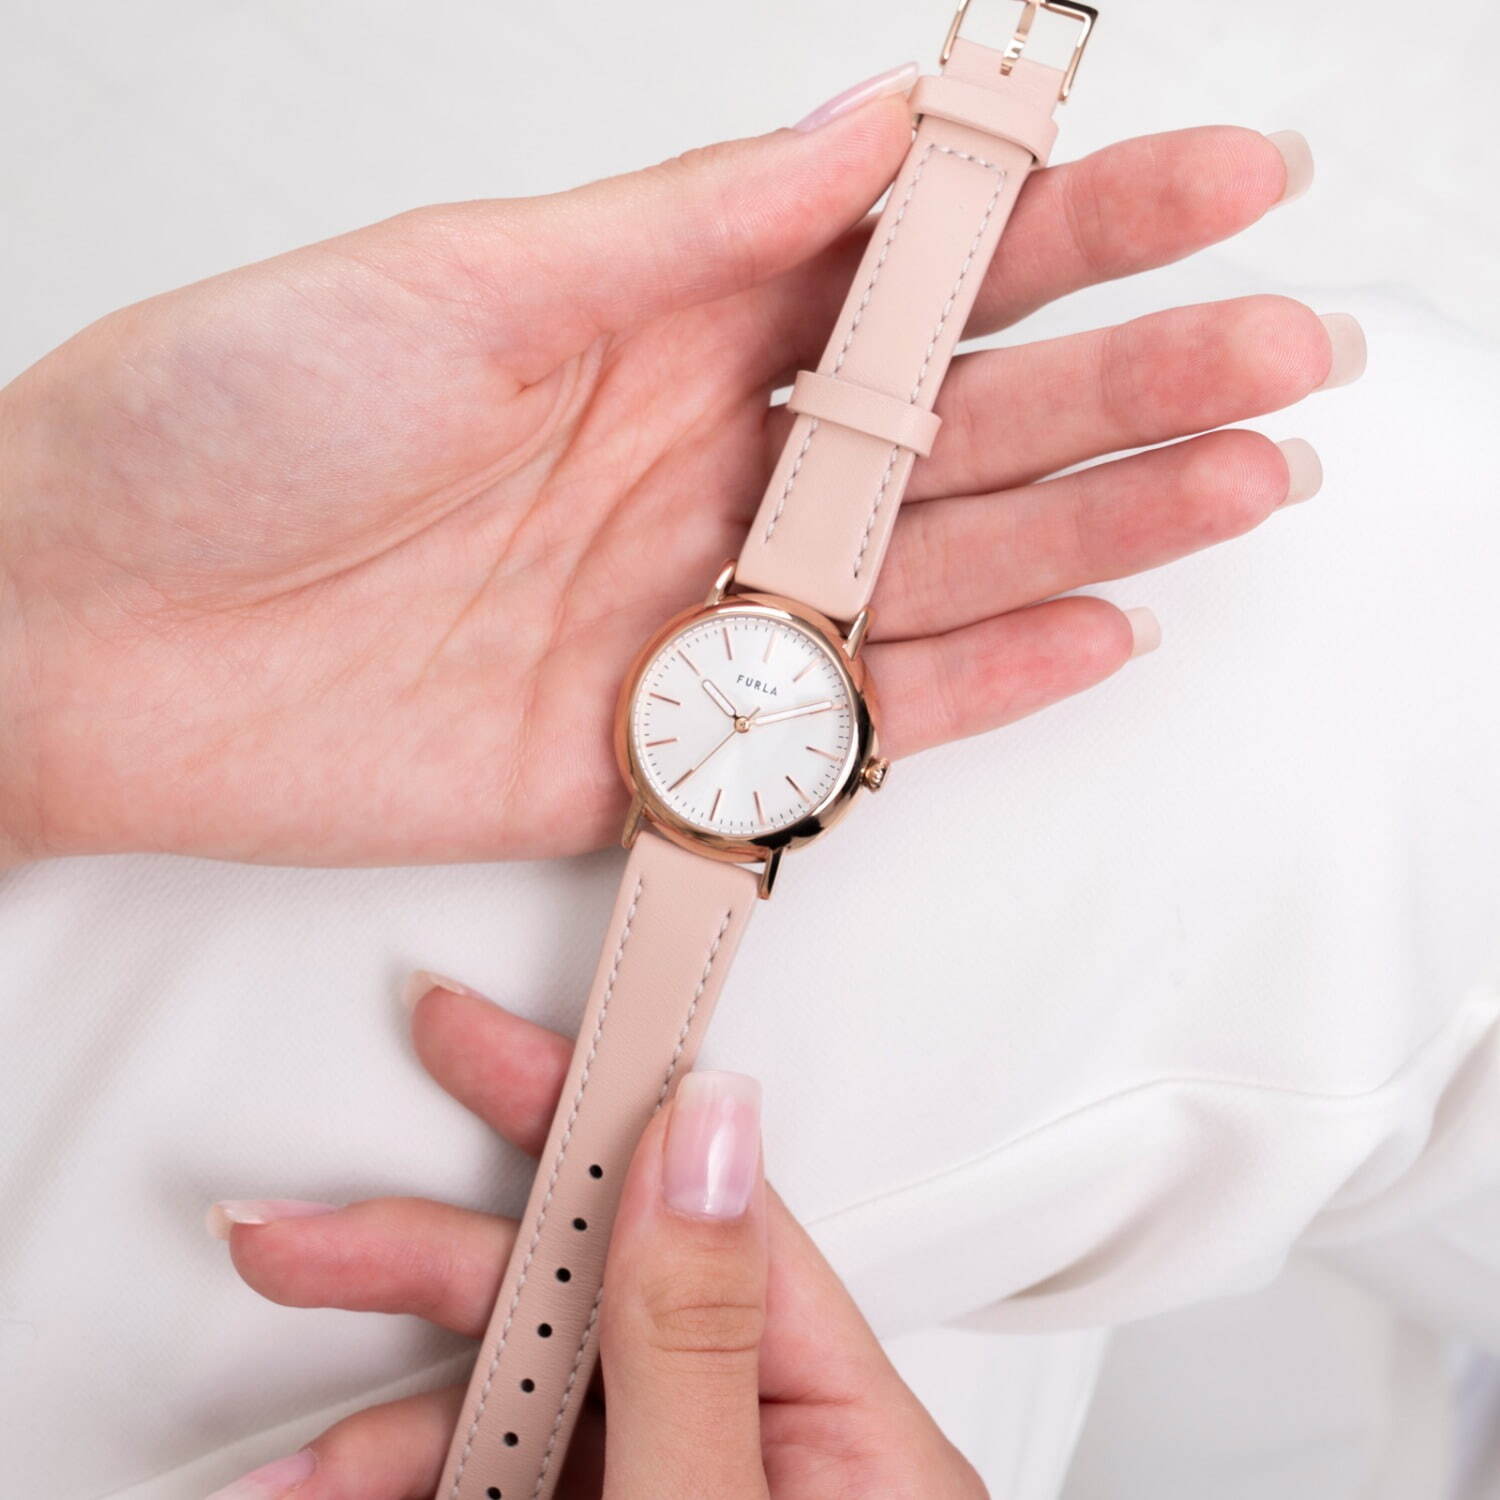 フルラ“淡いピンクトーン”の新作腕時計「フルラ イージー シェイプ ...